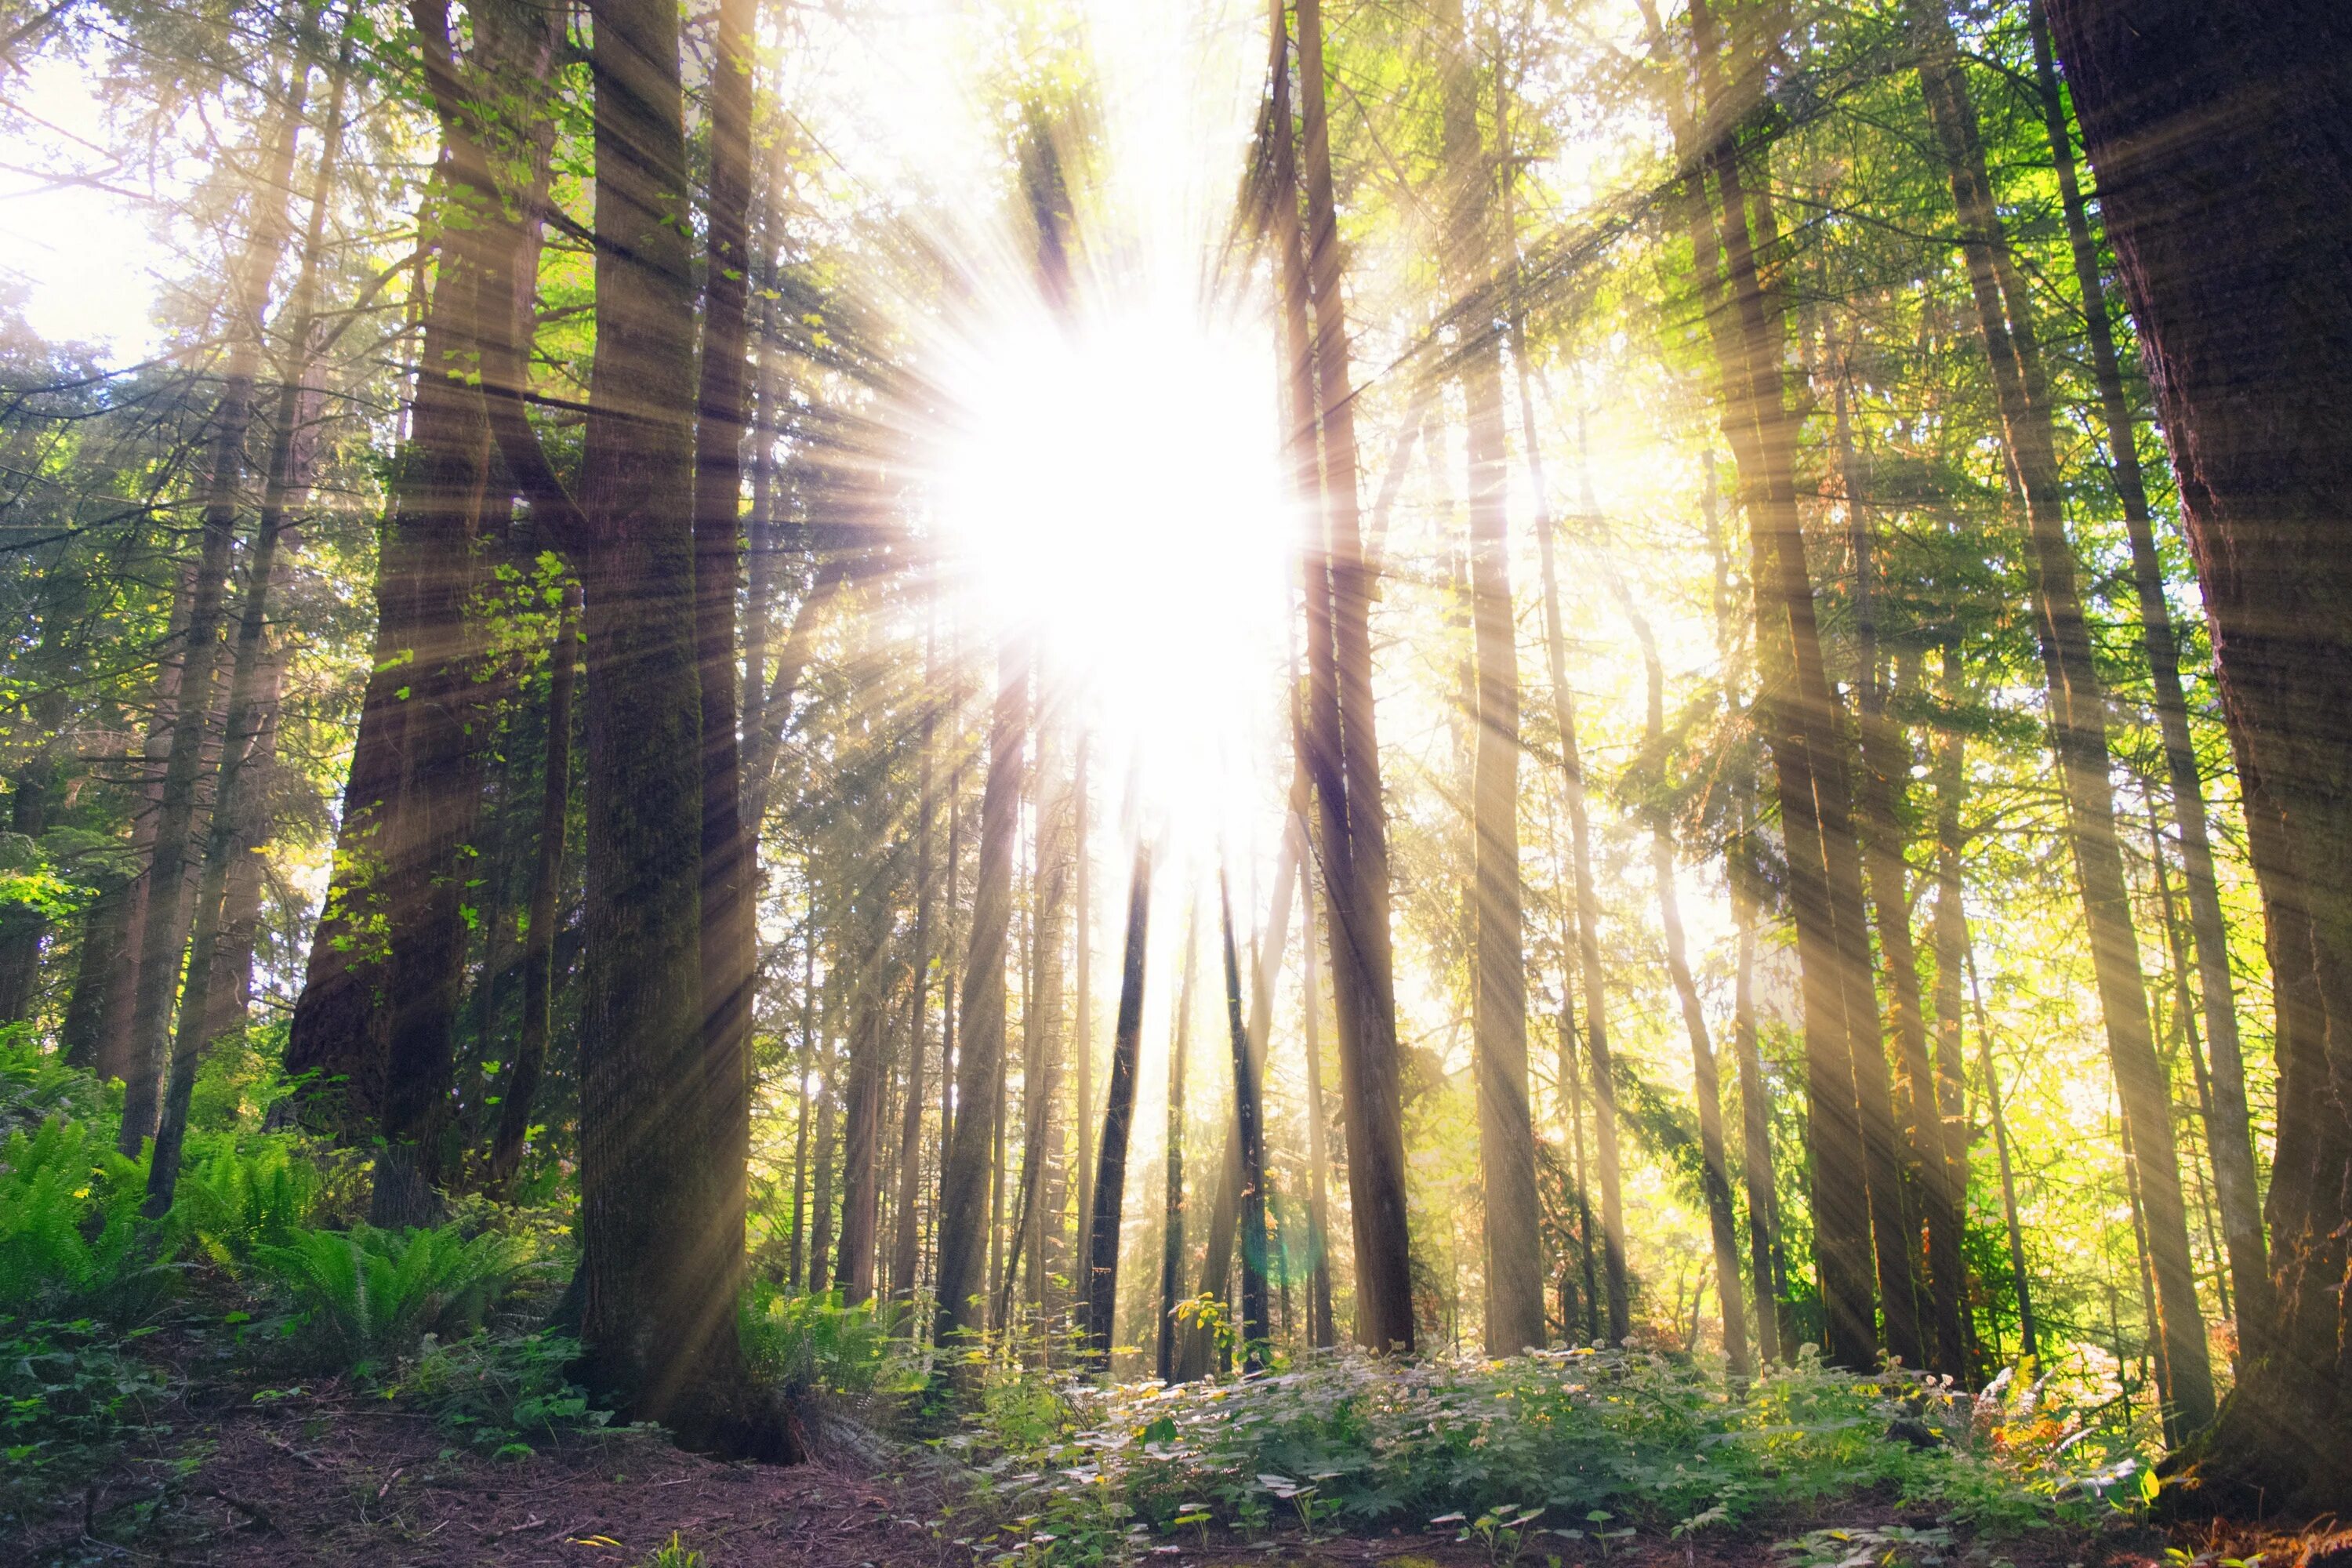 Весеннее солнце осветило землю. "Солнце в лесу". Лес Освещенный солнцем. Солнечный лес. Лучи солнца в лесу.